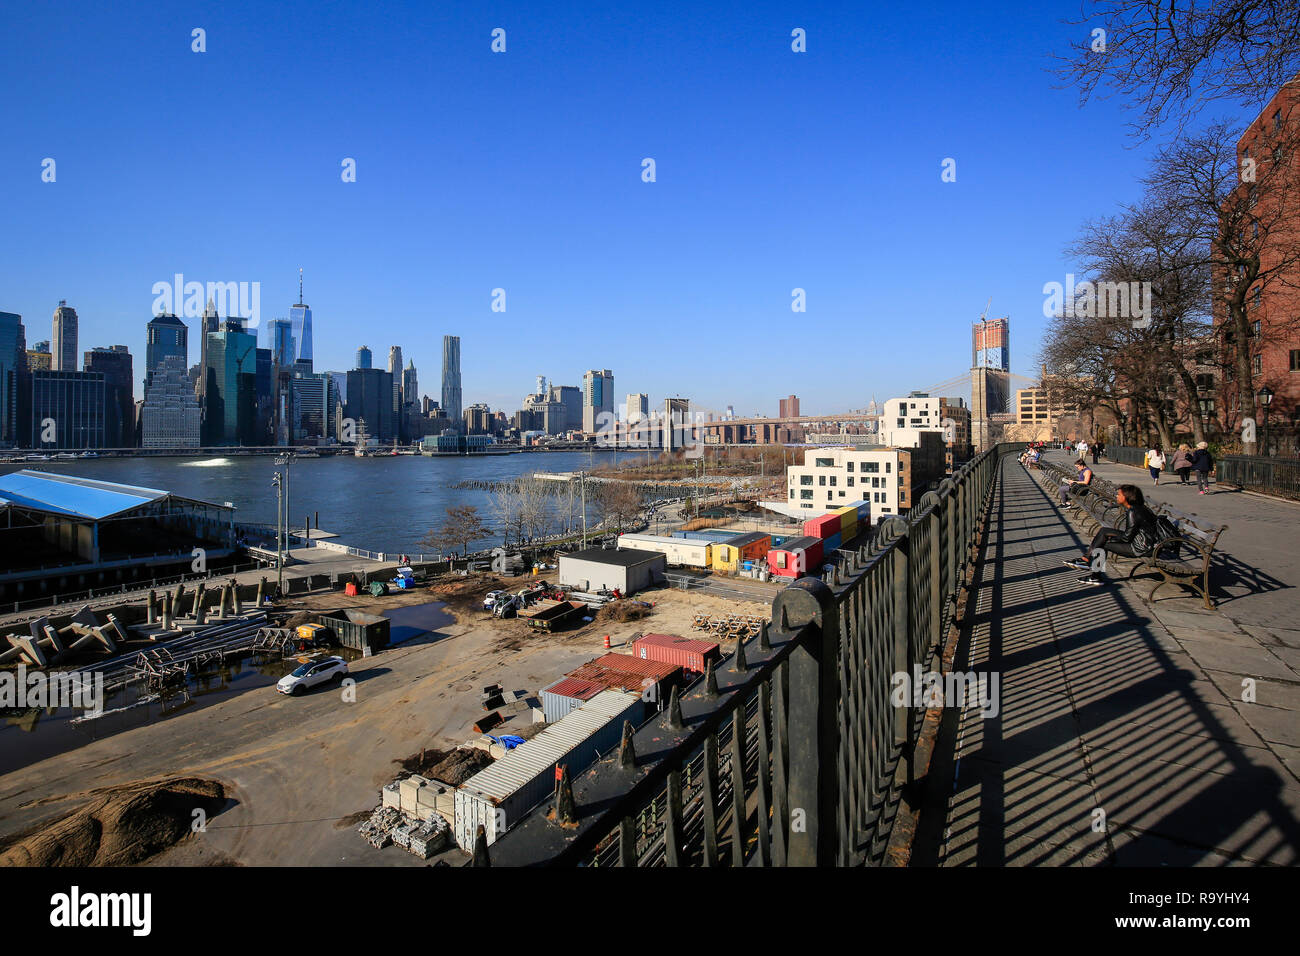 21.02.2018, New York City, New York, Vereinigte Staaten von Amerika - Uferpromenade Brooklyn Heights, Blick Richtung Manhattan skyline and Brooklyn Br Stock Photo